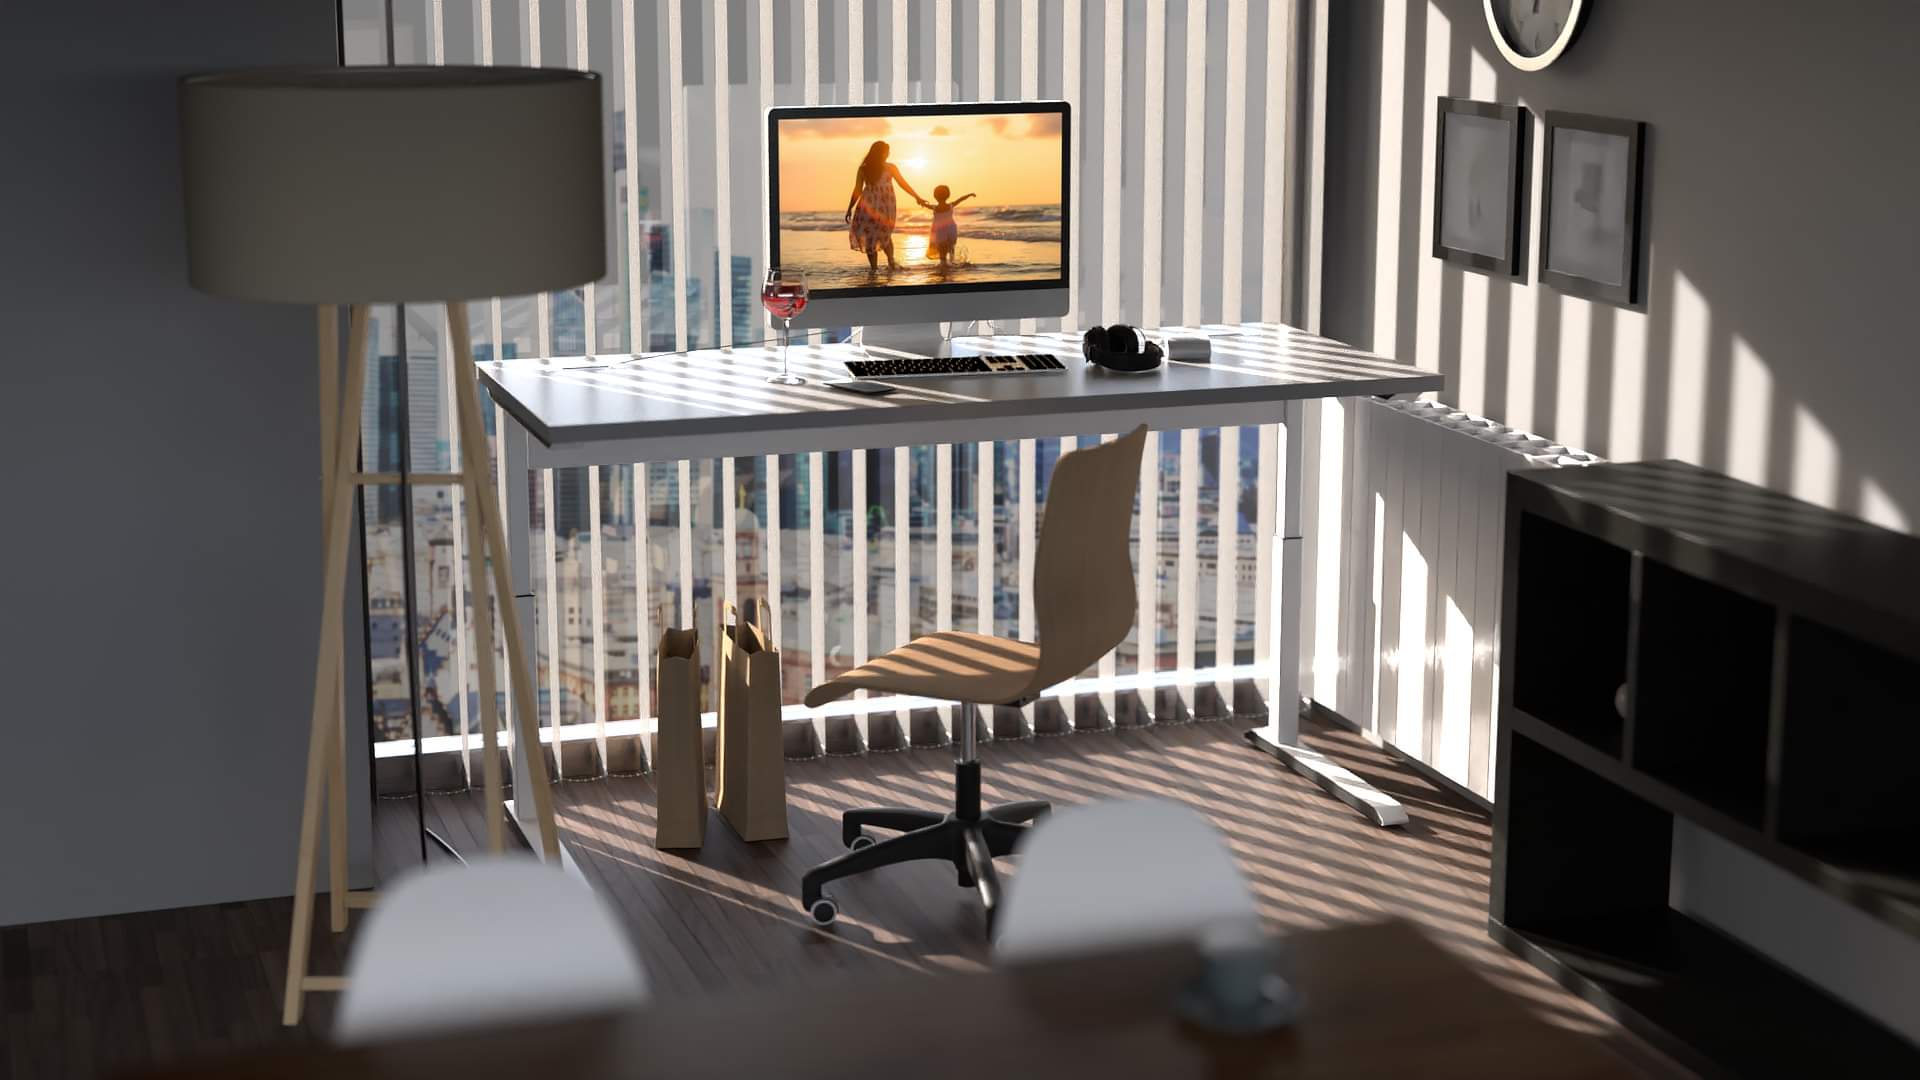 Fotorealistisches Innenarchitur Rendering einer Home Office Szene mit iMAC auf einem Höhenverstellaren Schreibtisch mit Weinglas und Büroprodukten.